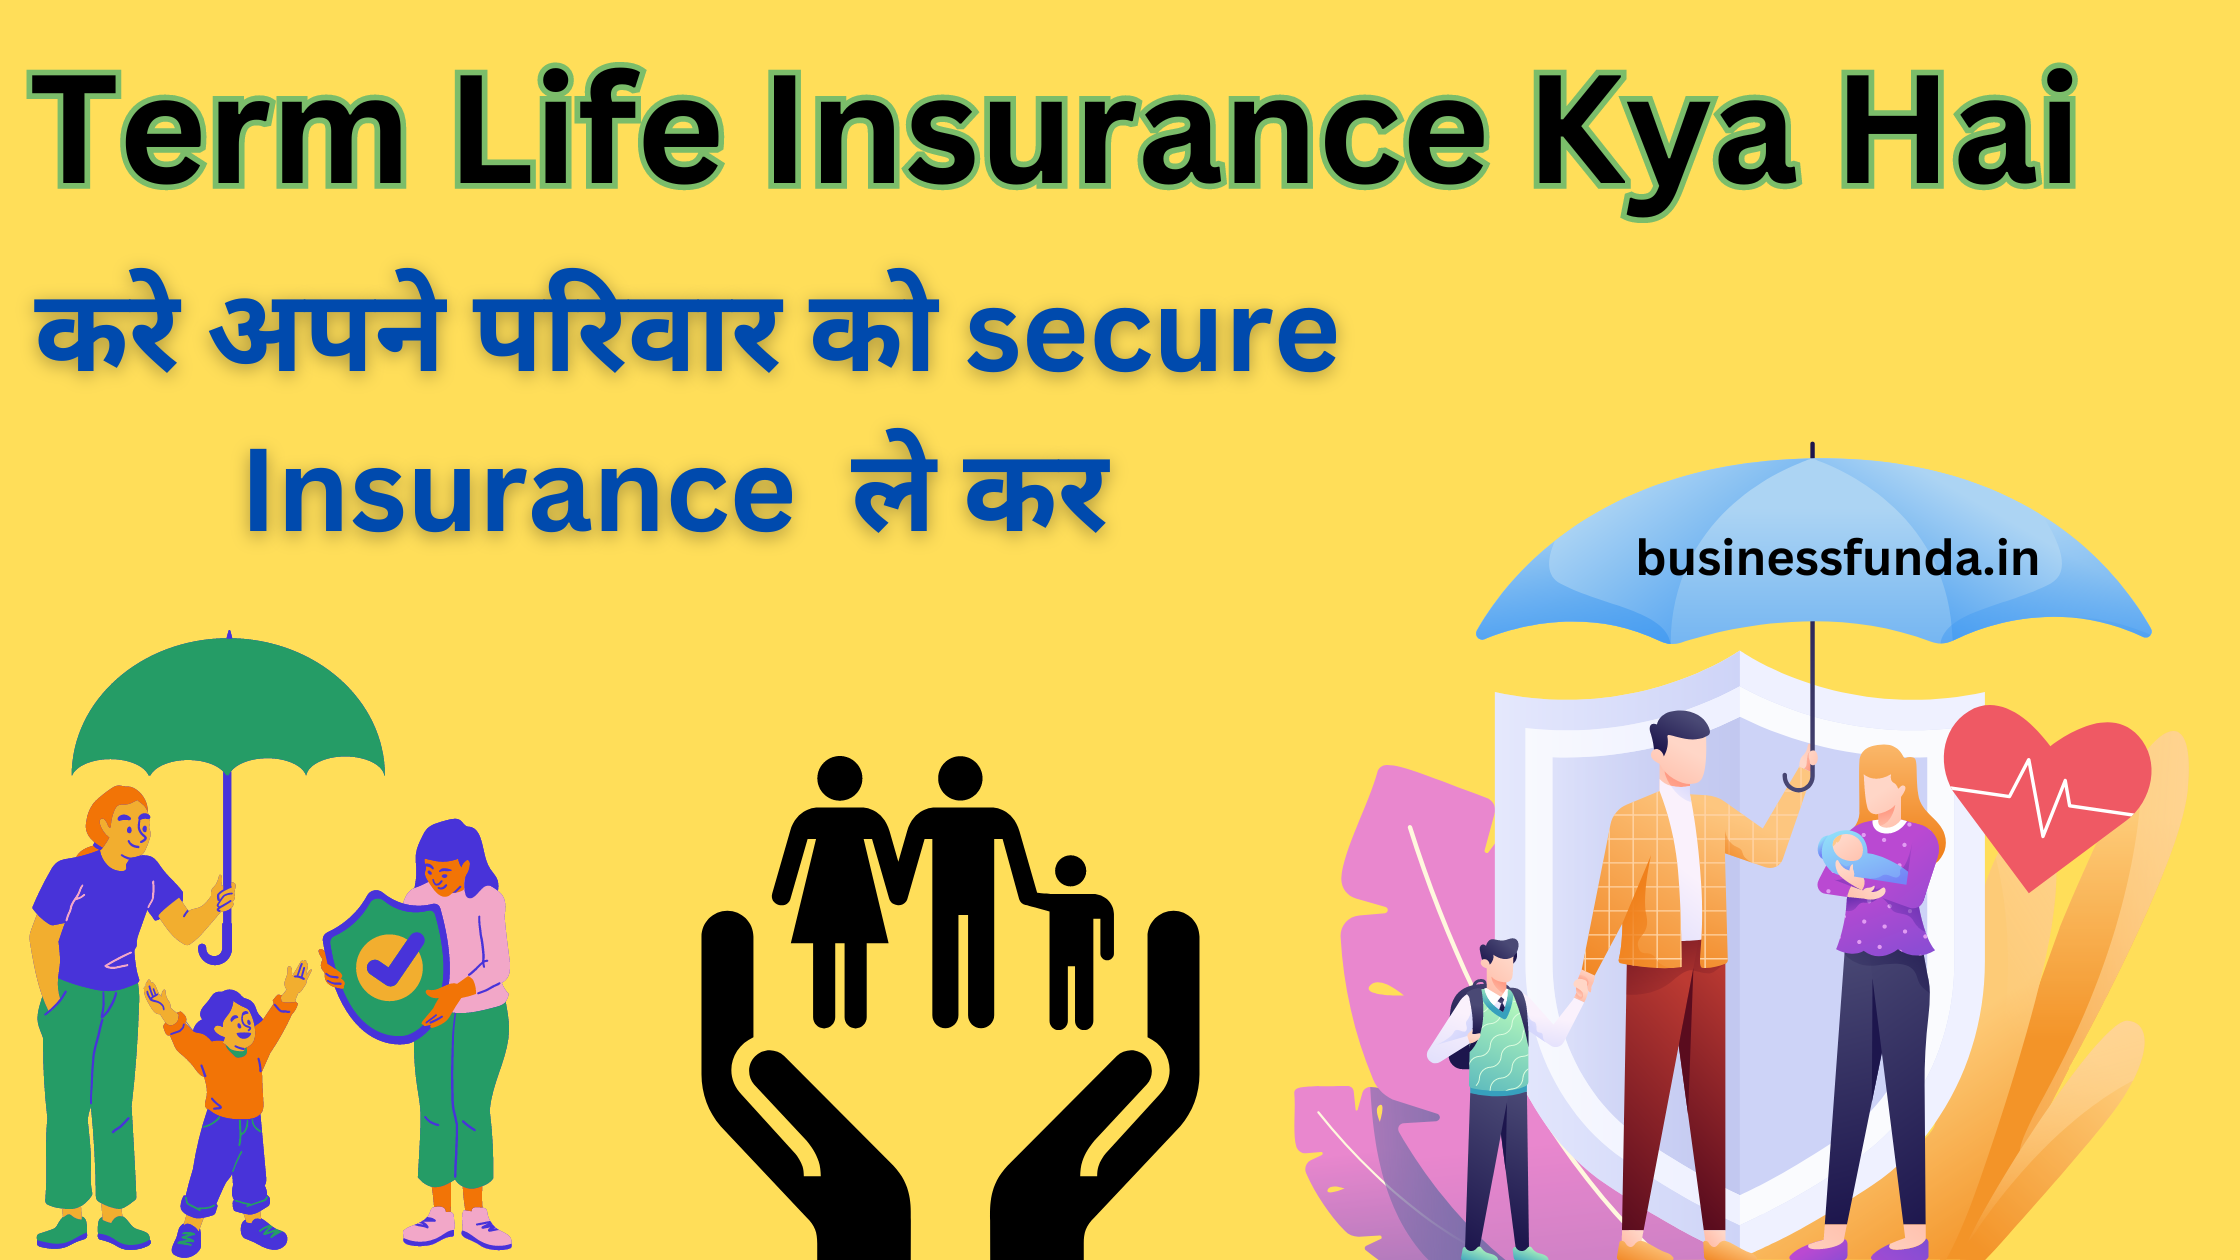 Term life insurance kya hai